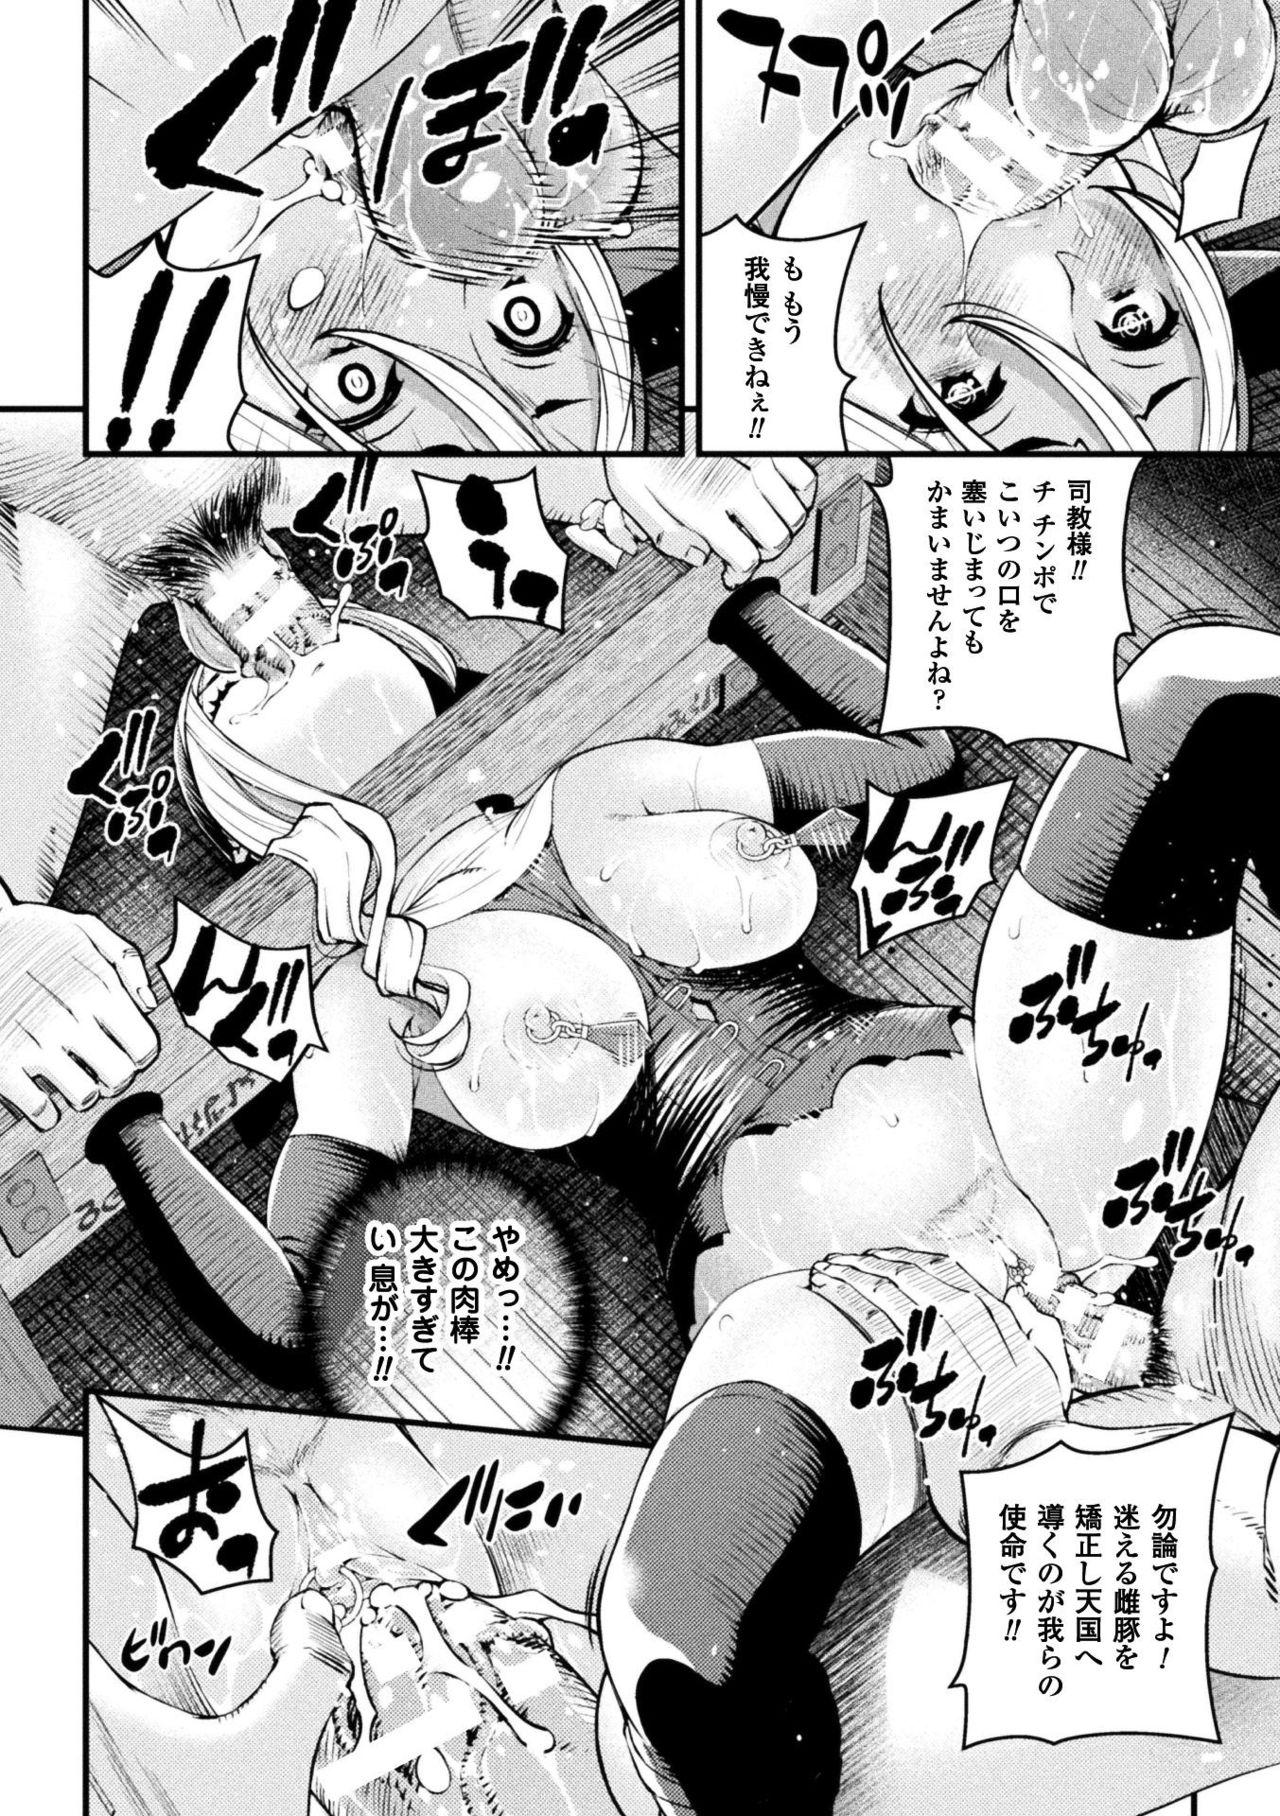 Seigi no Heroine Kangoku File Vol. 16 63